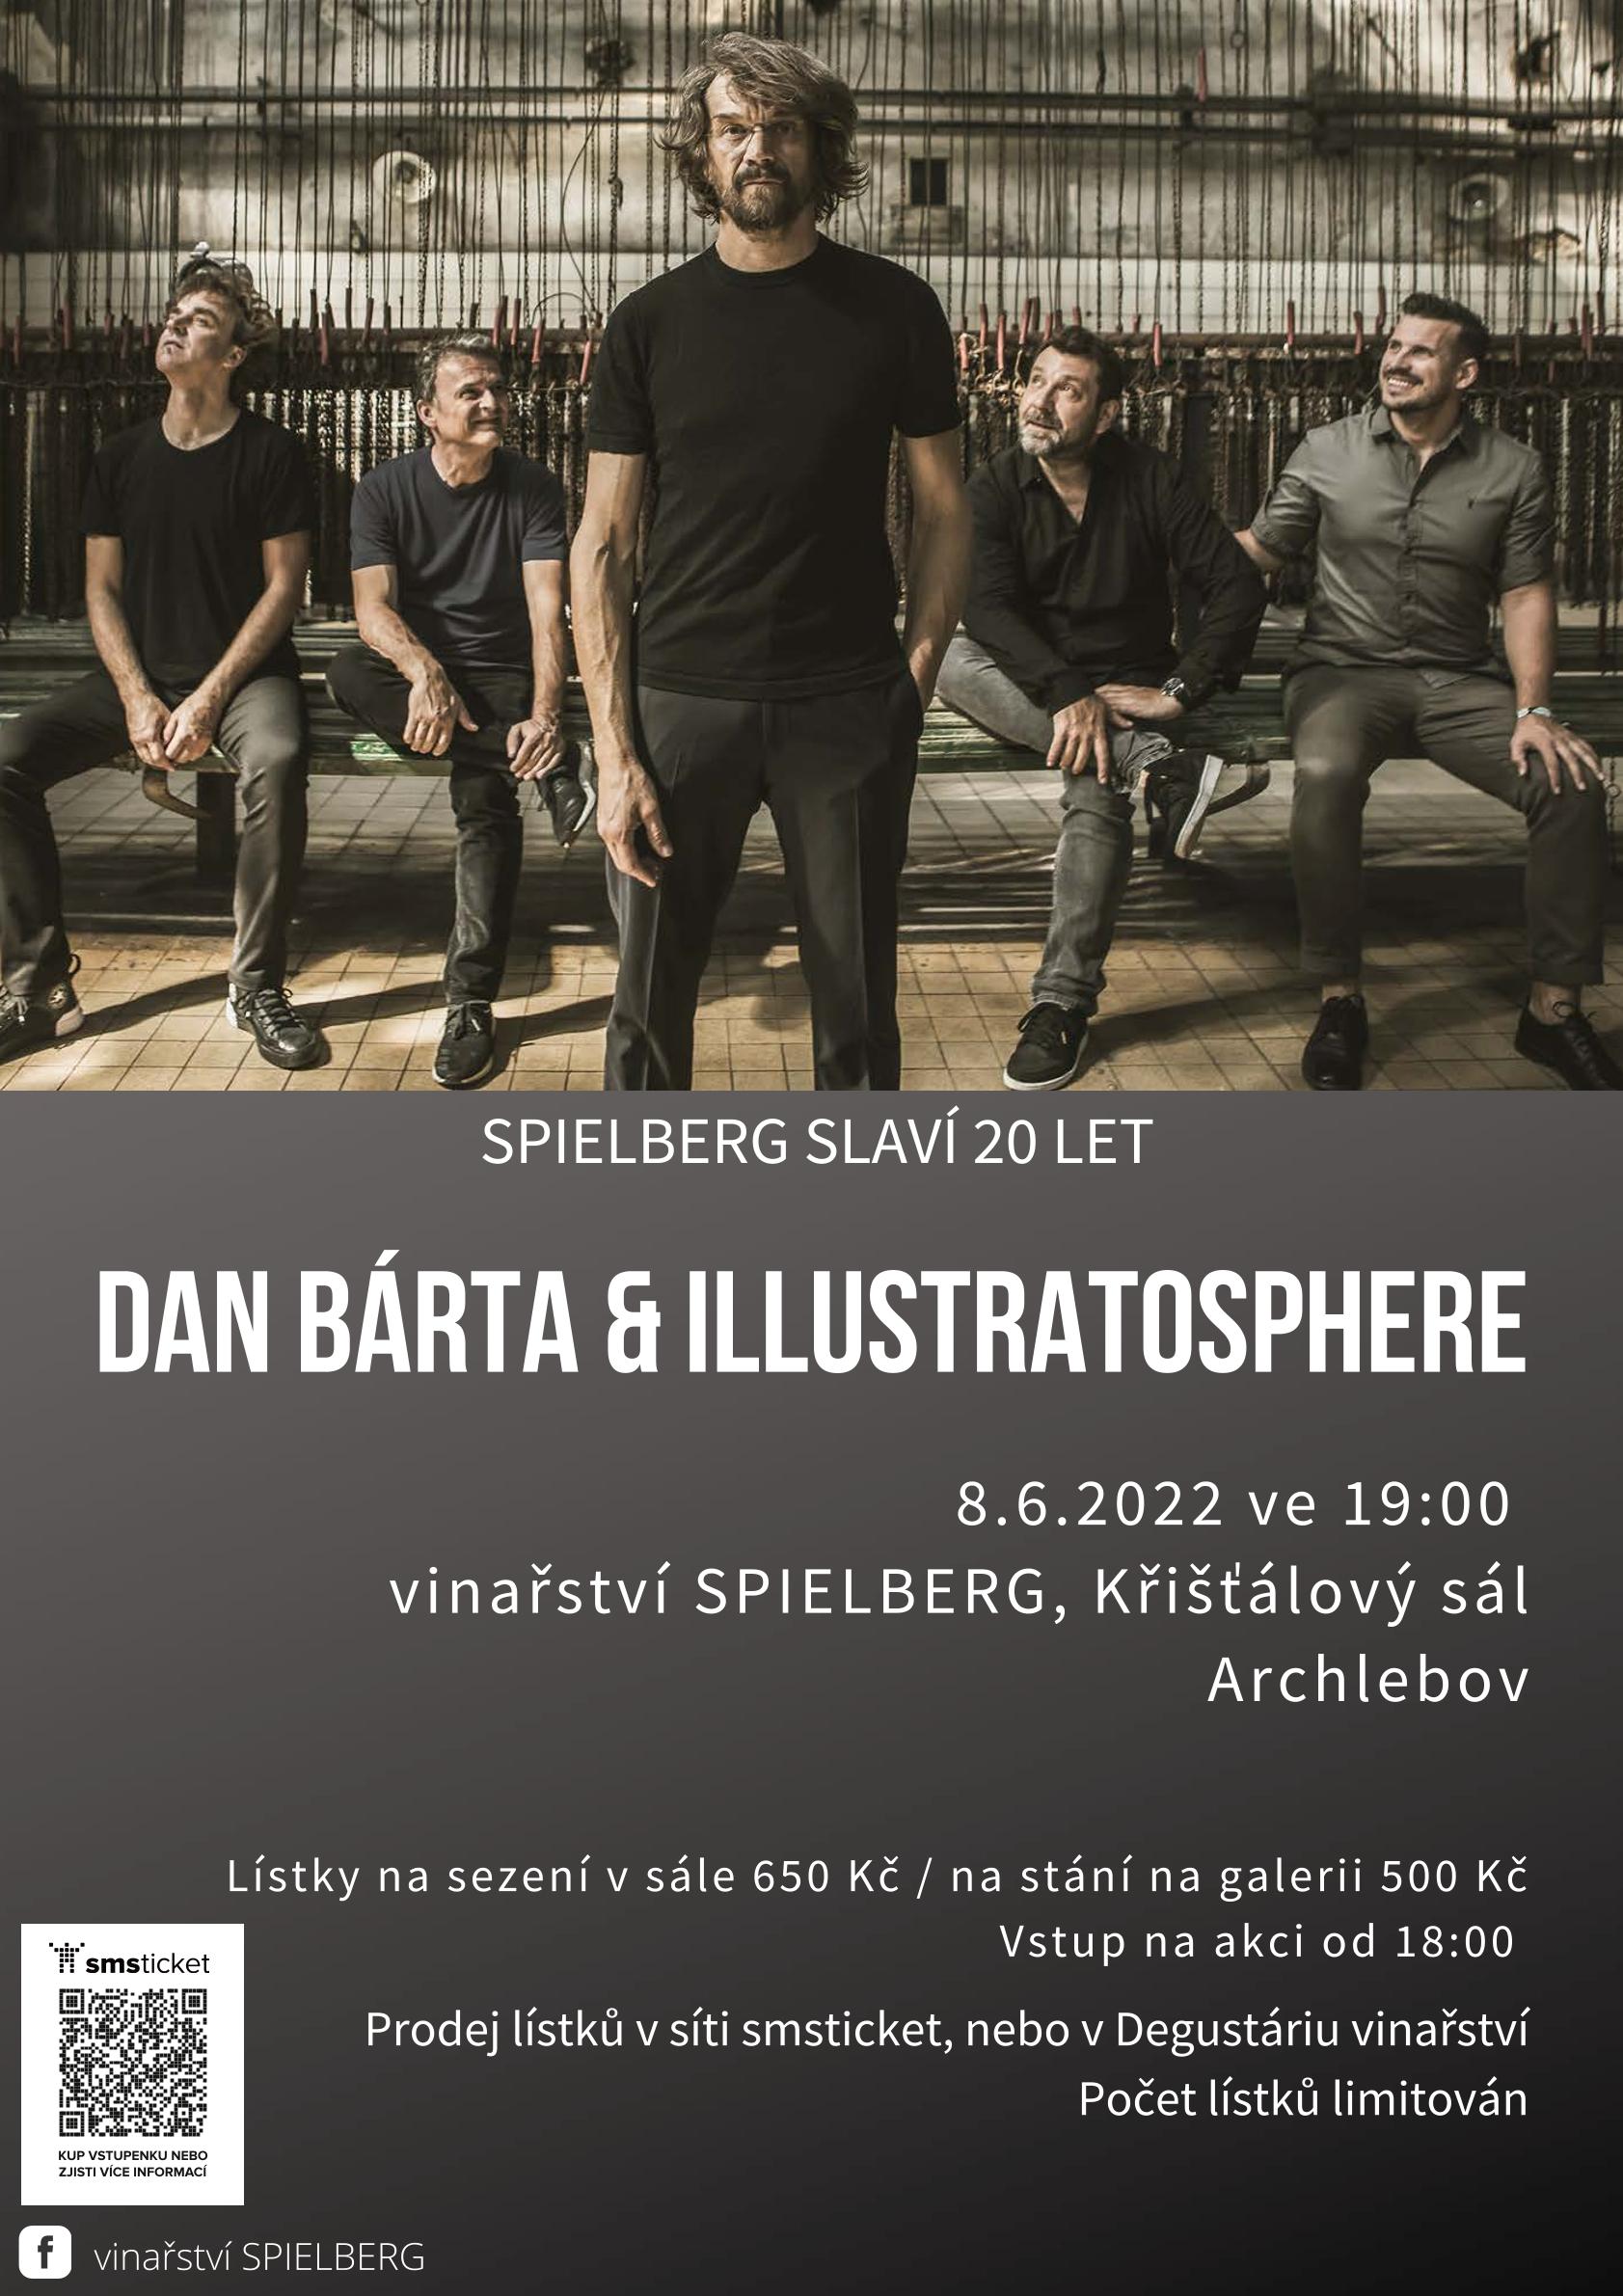 Dan Bárta & Illustratosphere - Zvířený prach tour, Archlebov - Křišťálový sál vinařství Spielberg | Archlebov | 8. 6. 2022